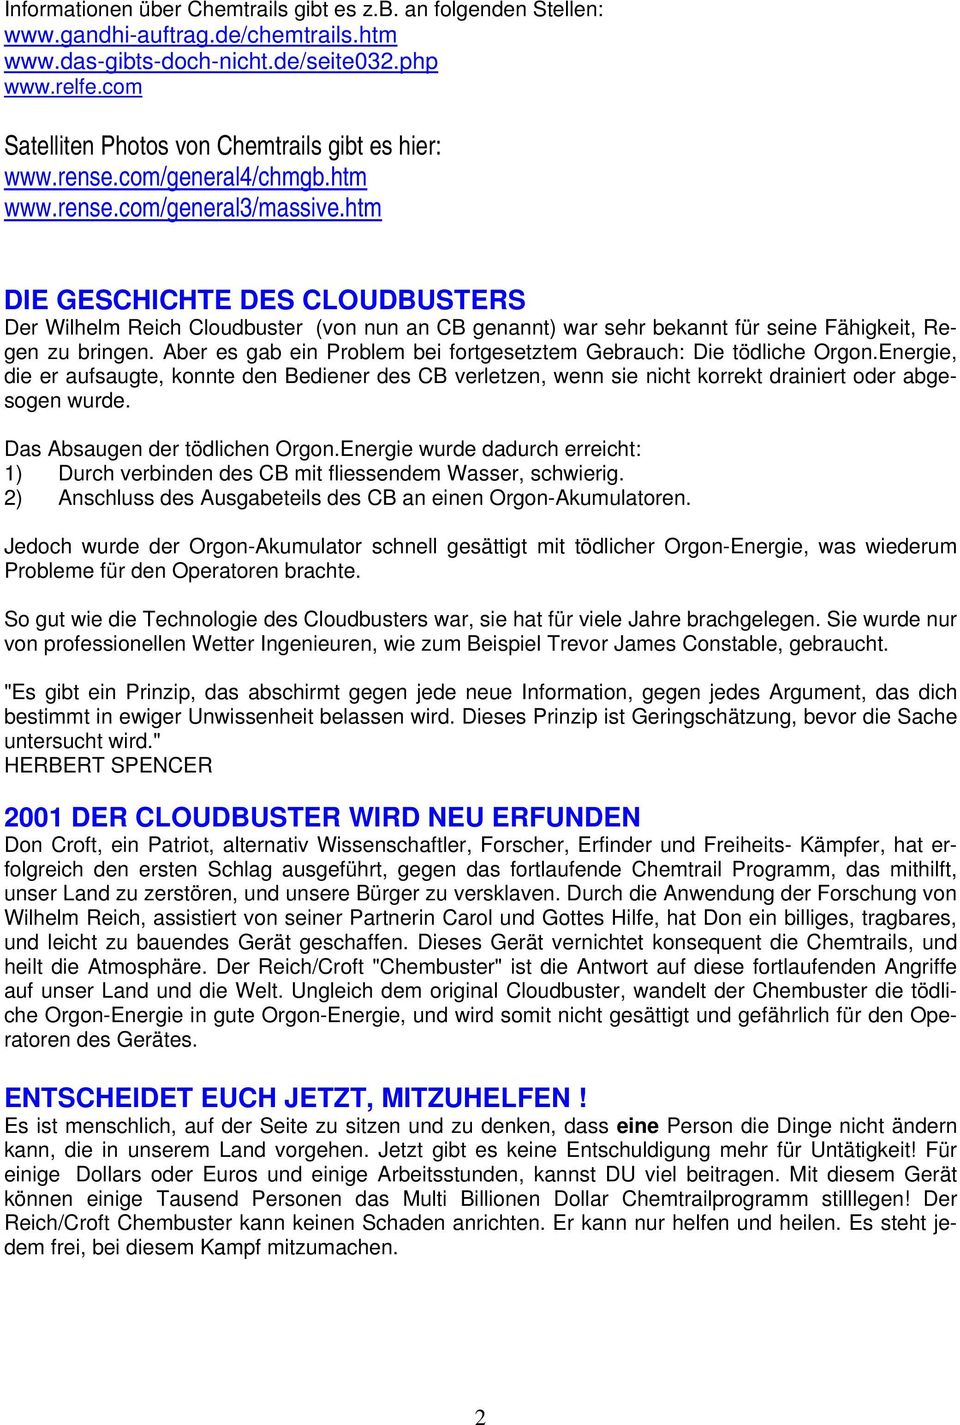 htm DIE GESCHICHTE DES CLOUDBUSTERS Der Wilhelm Reich Cloudbuster (von nun an CB genannt) war sehr bekannt für seine Fähigkeit, Regen zu bringen.